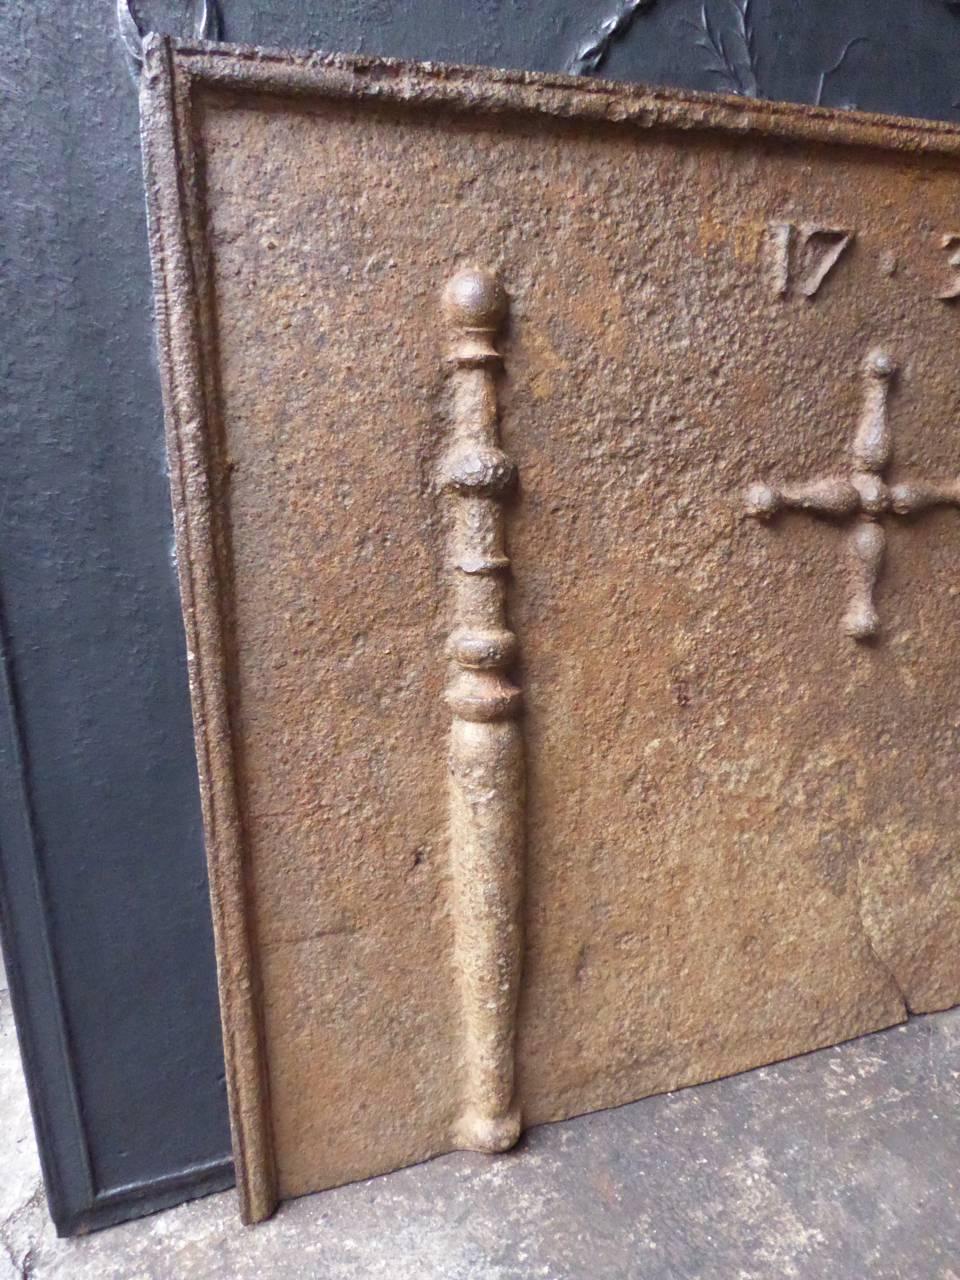 Französischer Kaminboden mit zwei Säulen des Herkules, einem Kreuz und dem Herstellungsdatum 1737.

Die Säule bezieht sich auf die Keule des Herkules, seine Lieblingswaffe. Es symbolisiert Macht. Seit der Antike sind die 